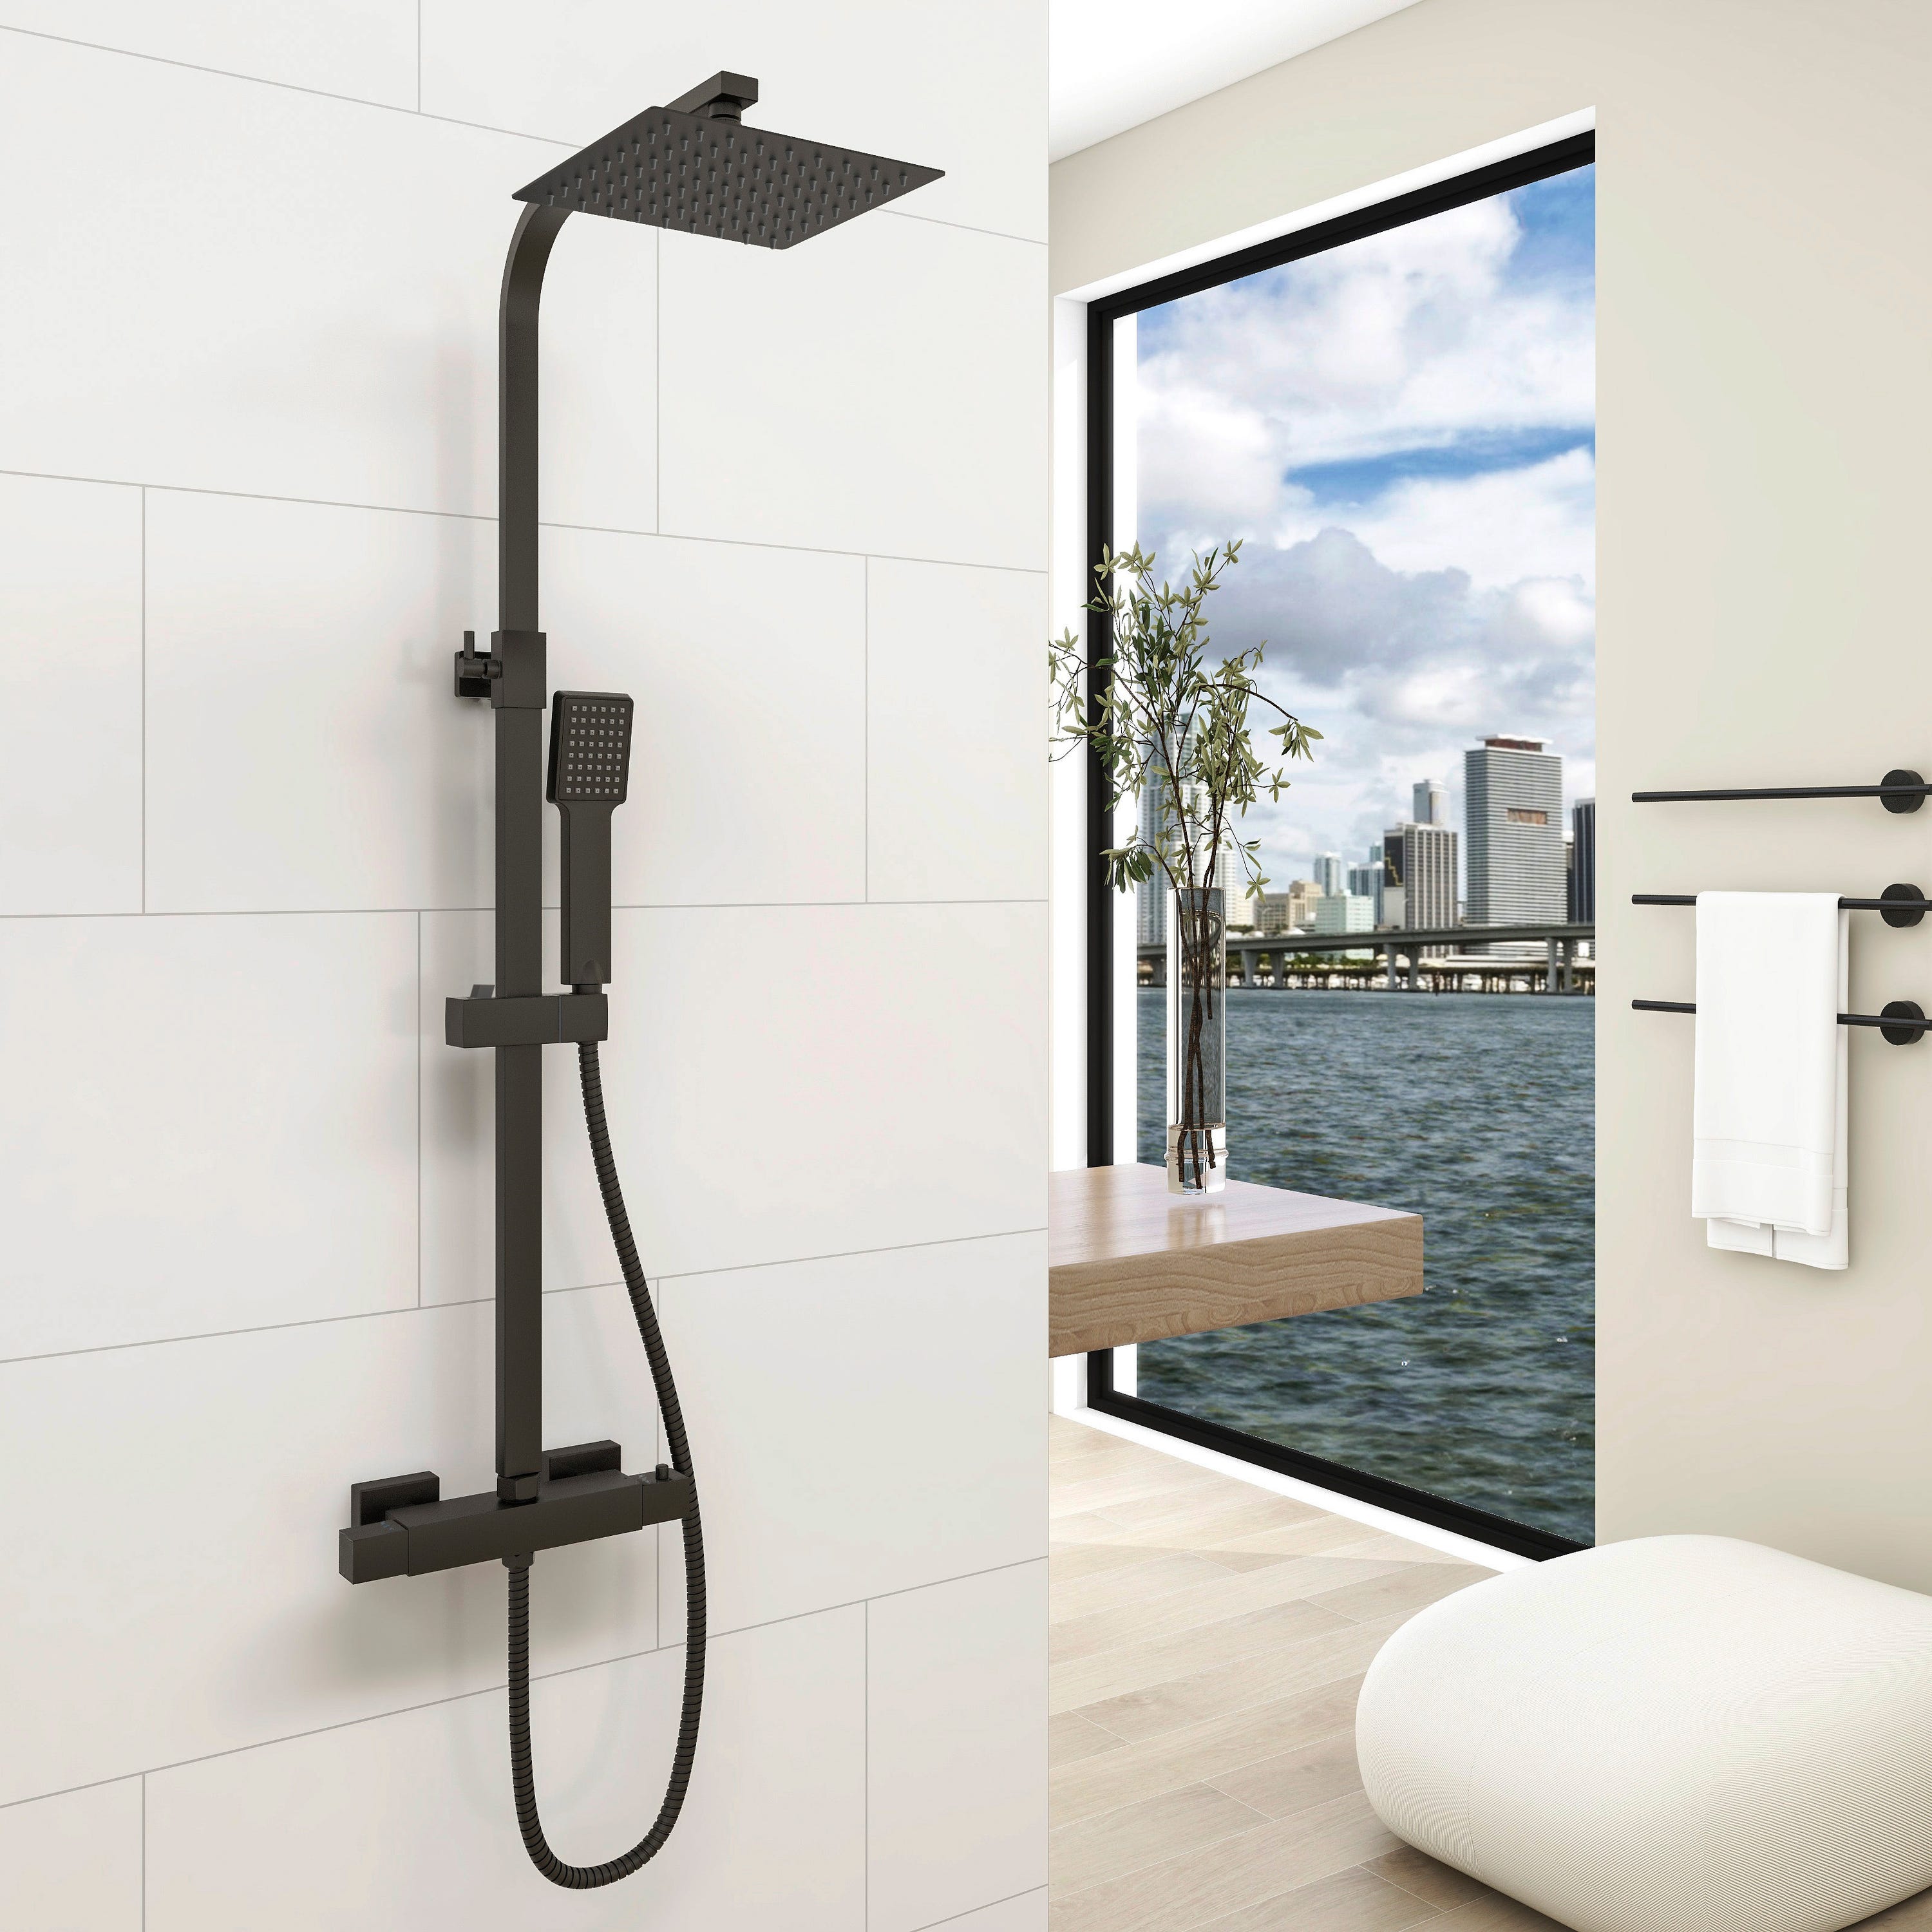 Comprar Barra de ducha termostática cuadrada online